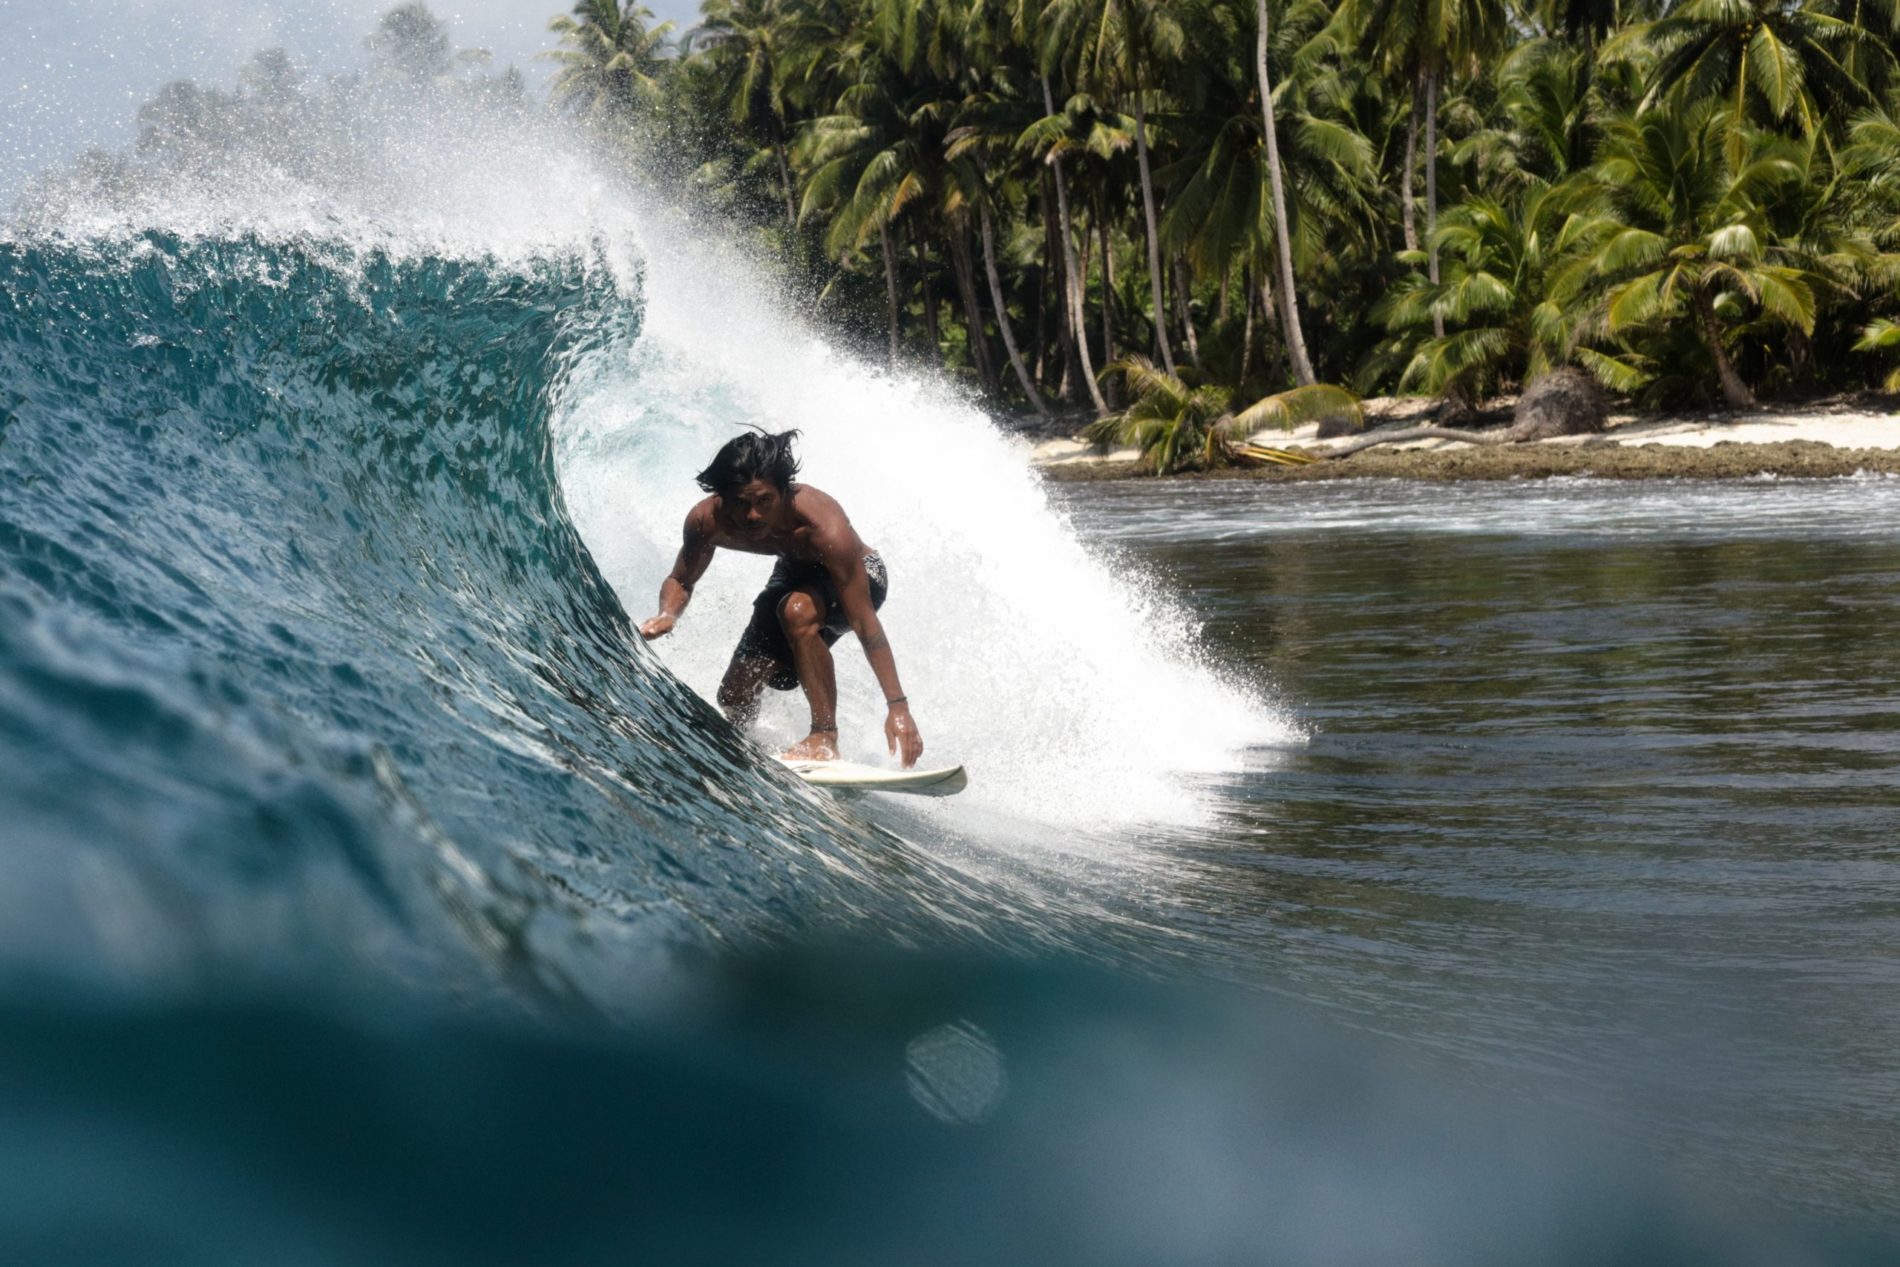 DryTide Team Rider Guntur Surfing Mentawais Home Spots 2